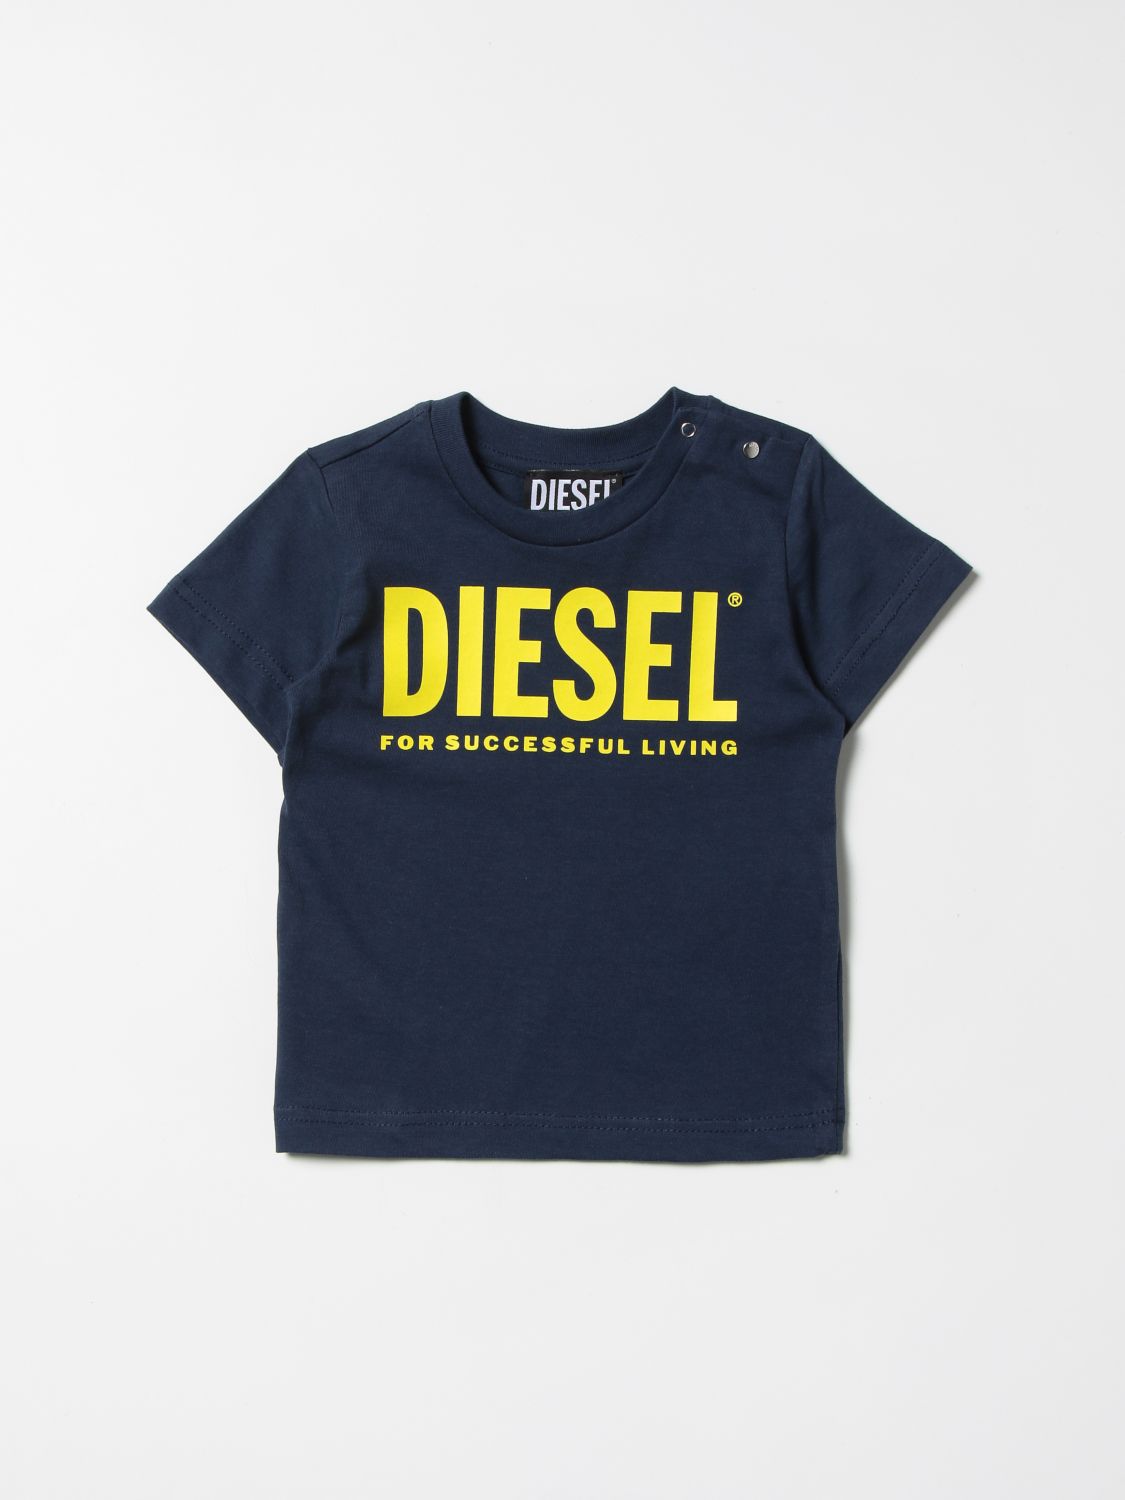 Diesel Diesel cotton t-shirt with logo